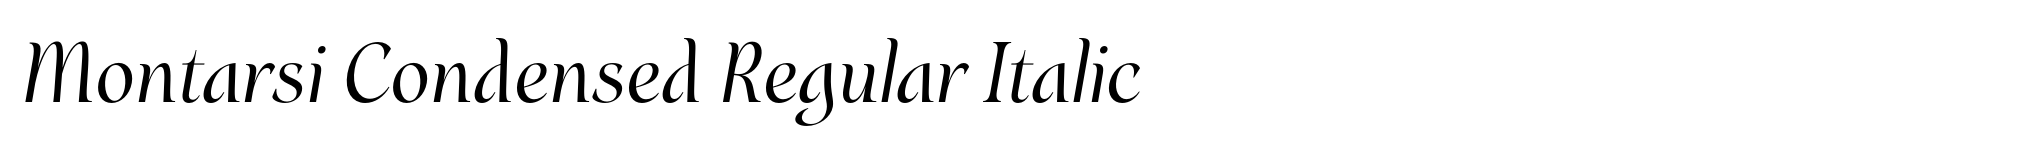 Montarsi Condensed Regular Italic image